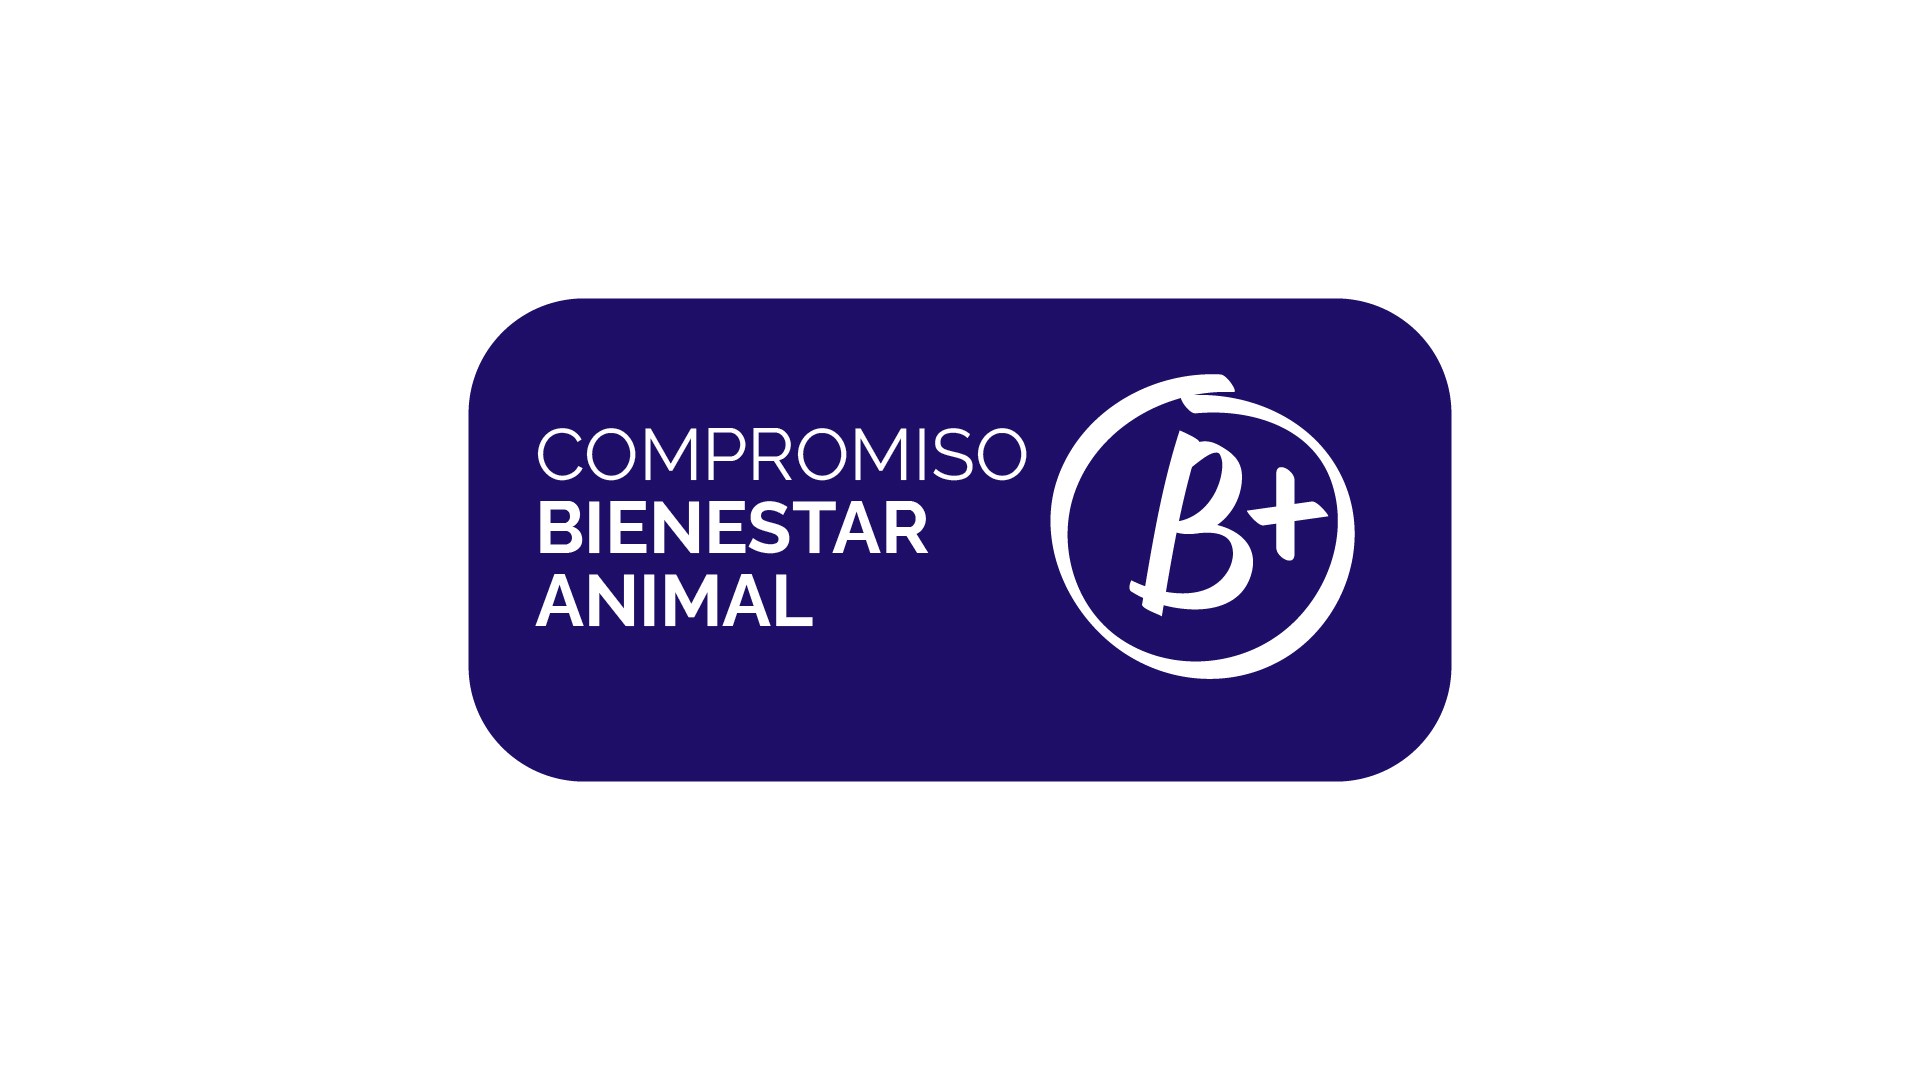 El sello B+ ya puede utilizarse en el sector cunícola, a través de la certificación Compromiso Bienestar Animal BACI